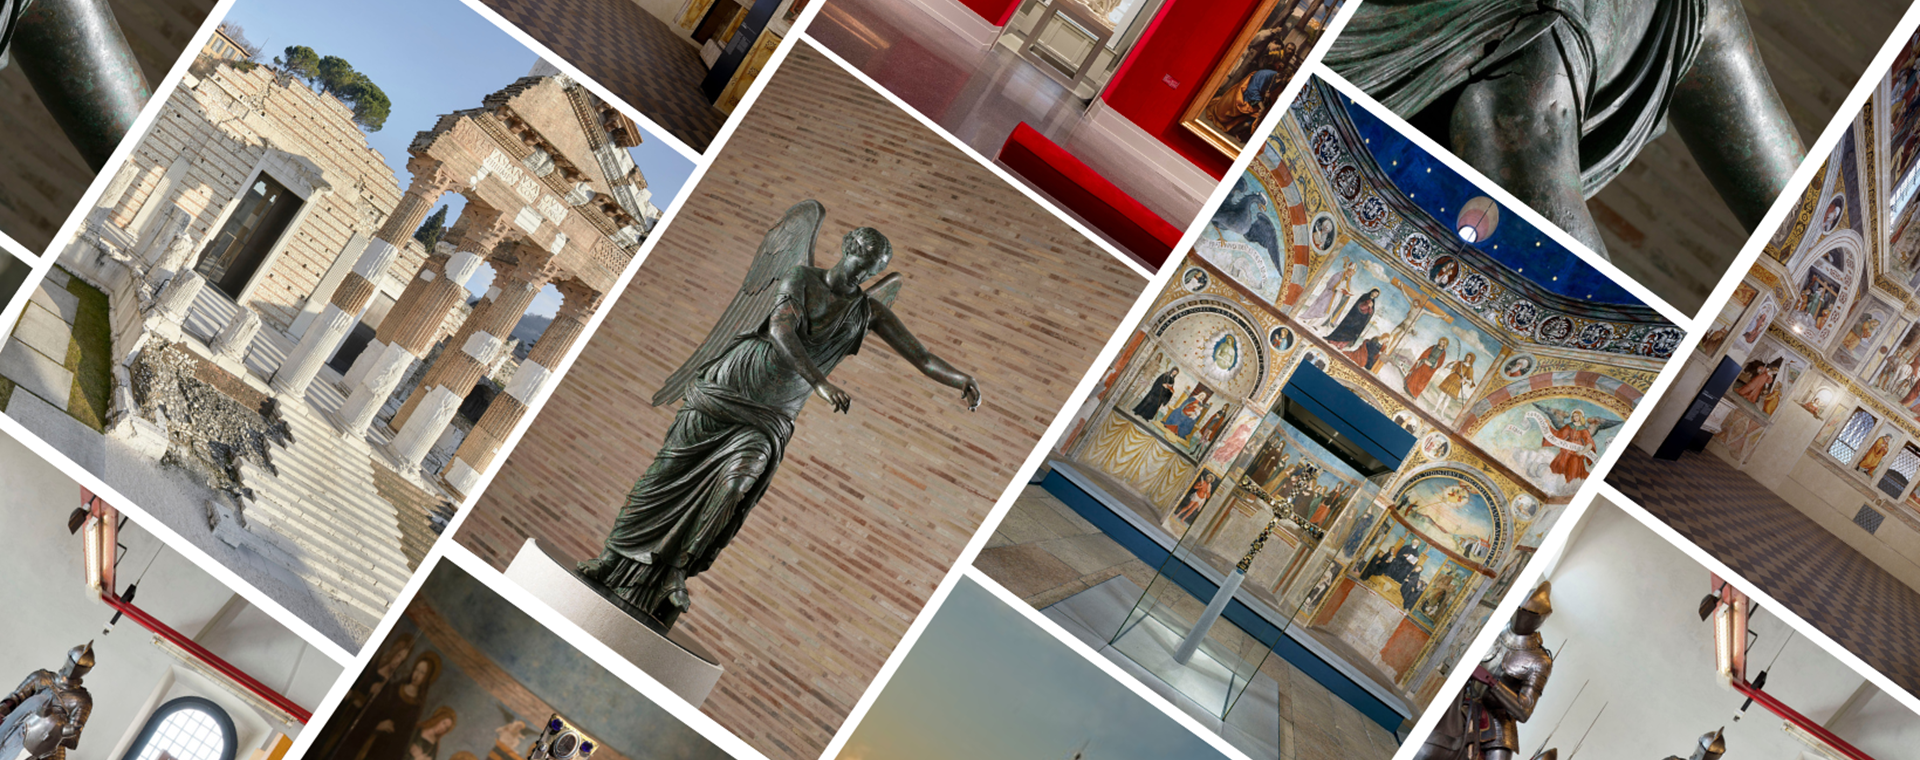 BTL e Fondazione Brescia Musei insieme nell'anno della Capitale della Cultura 2023 